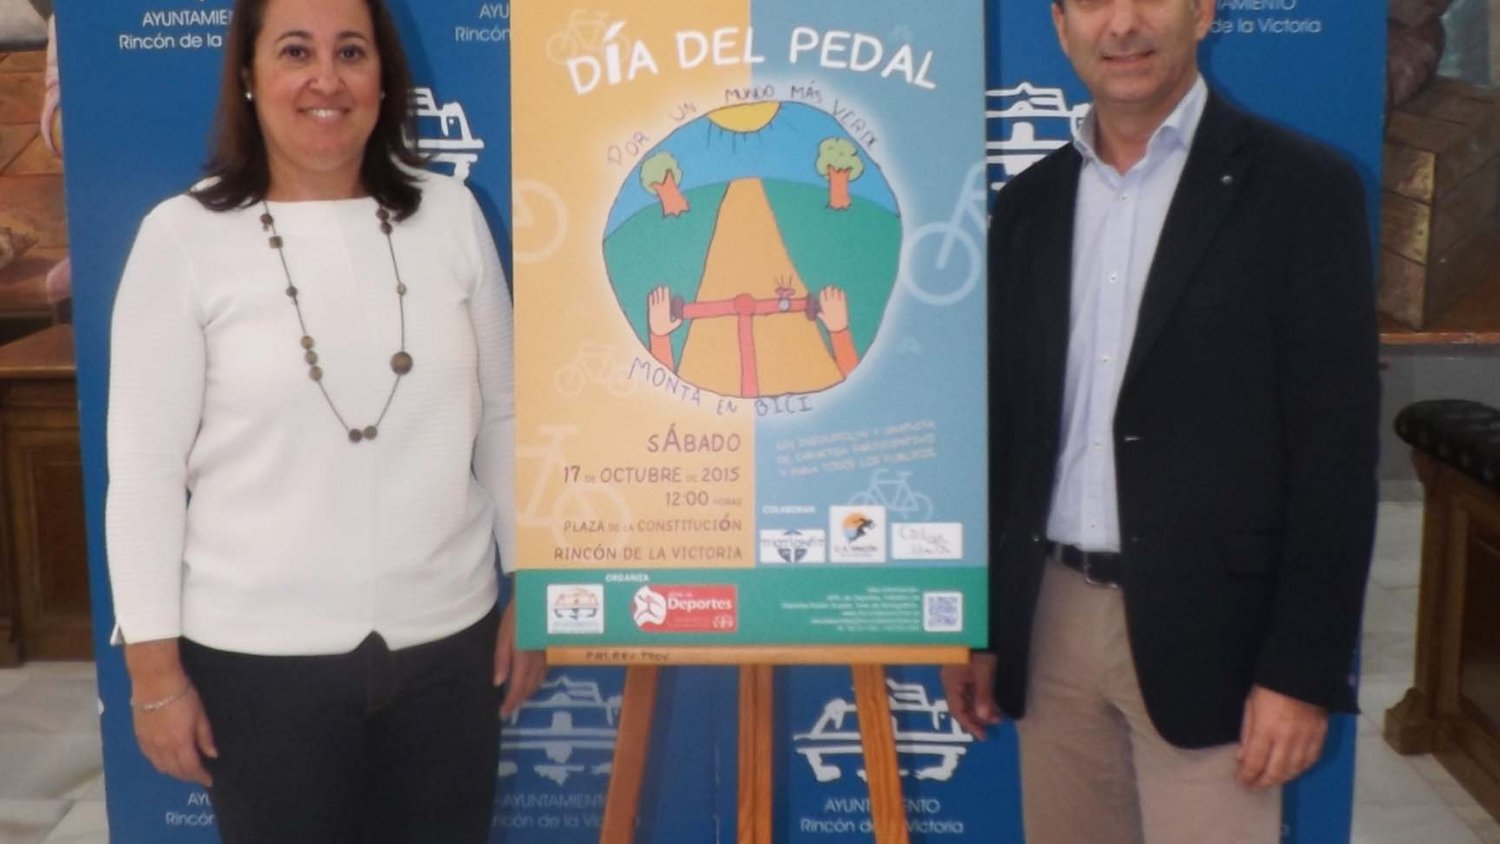 Rincón de la Victoria celebra este sábado el Día del Pedal